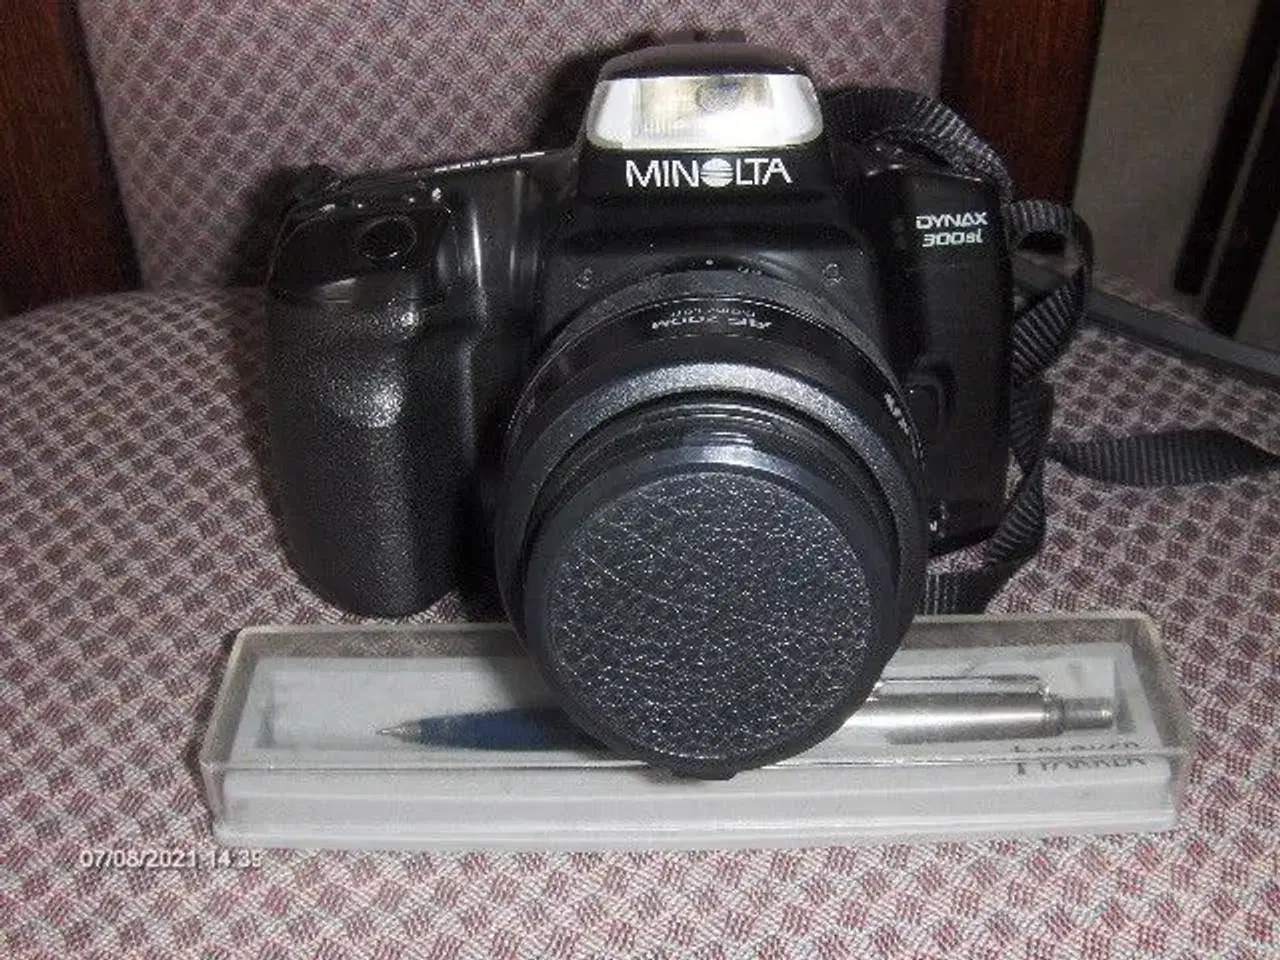 Billede 1 - Spejlreflex camera